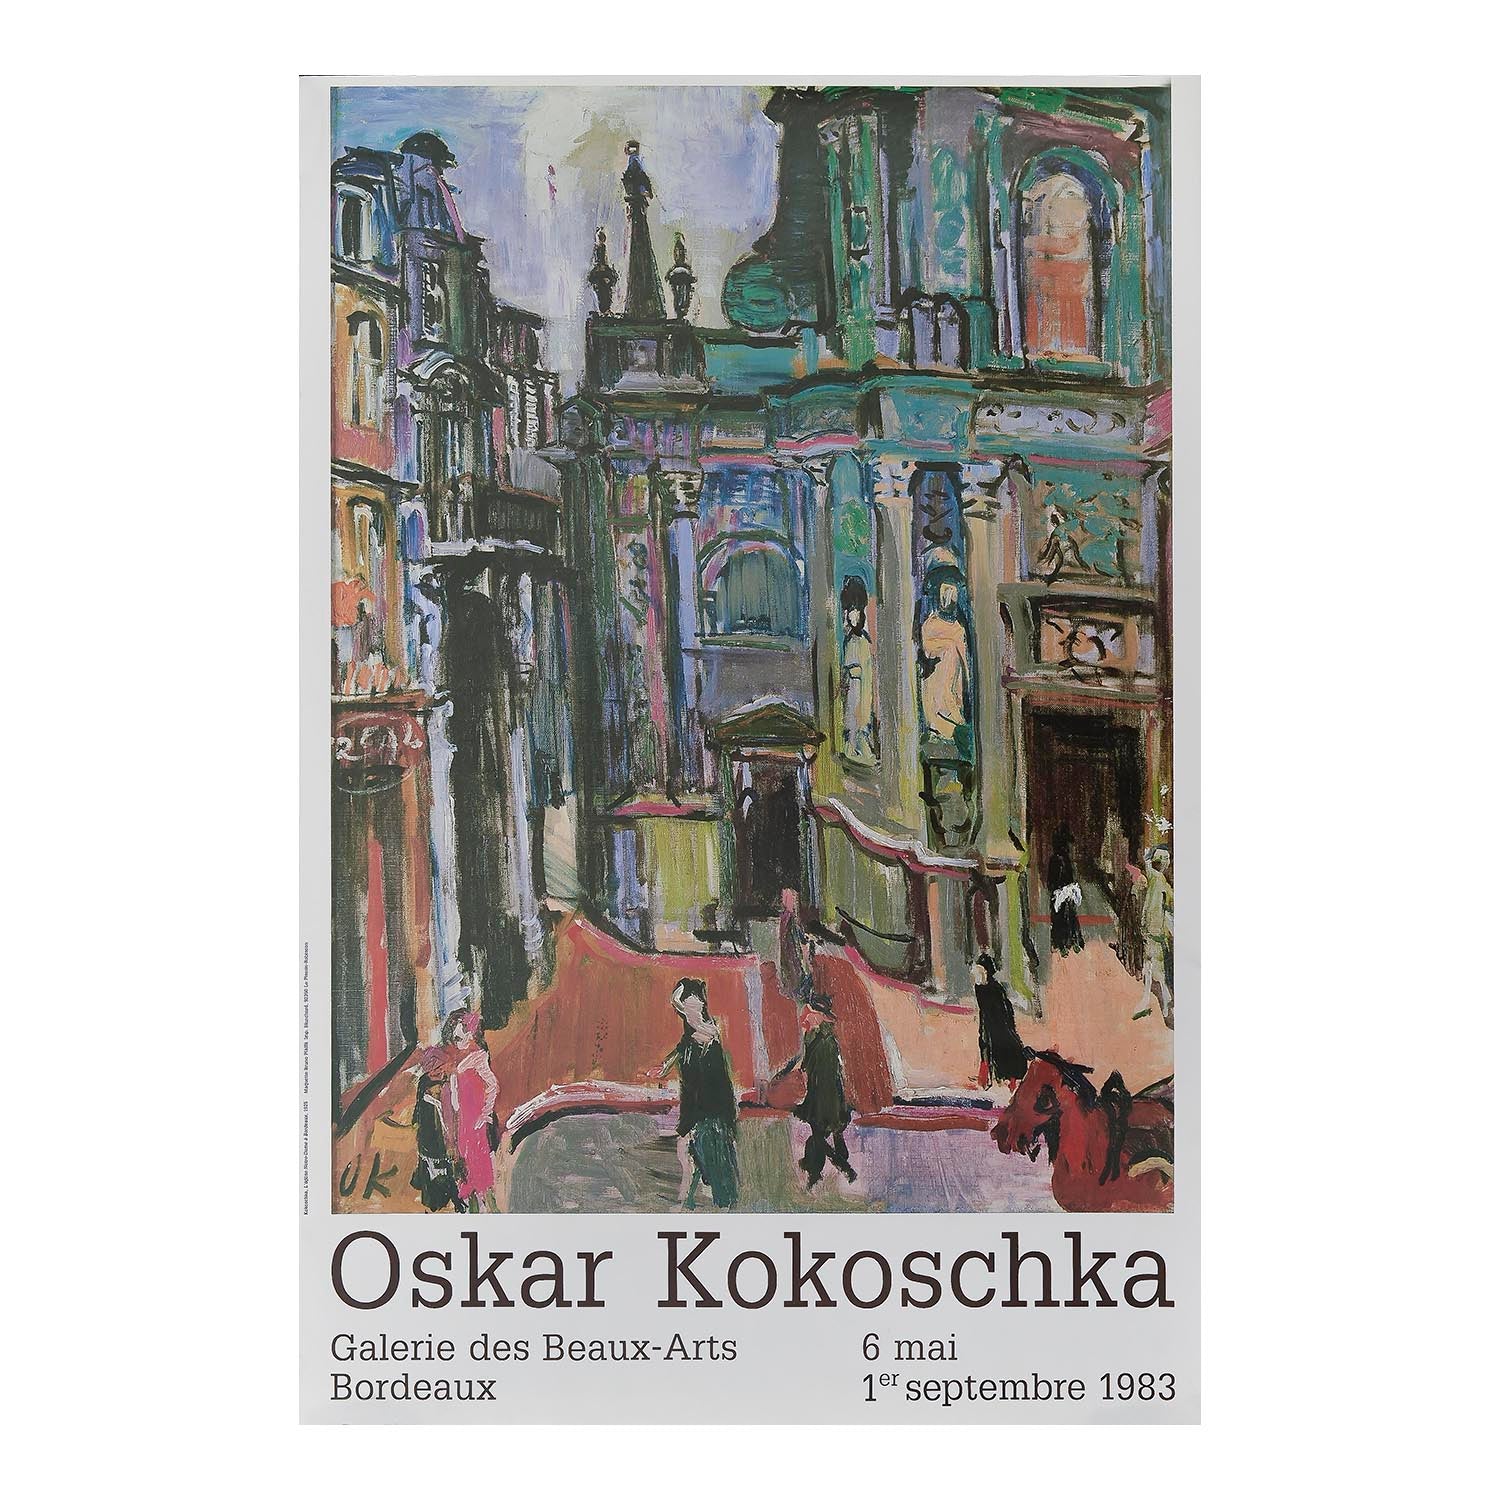 Original art exhibition poster, Oskar Kokoschka, Galerie des Beaux-Arts Bordeaux 1983. The design features The Church of Notre-Dame, Bordeaux (1925)